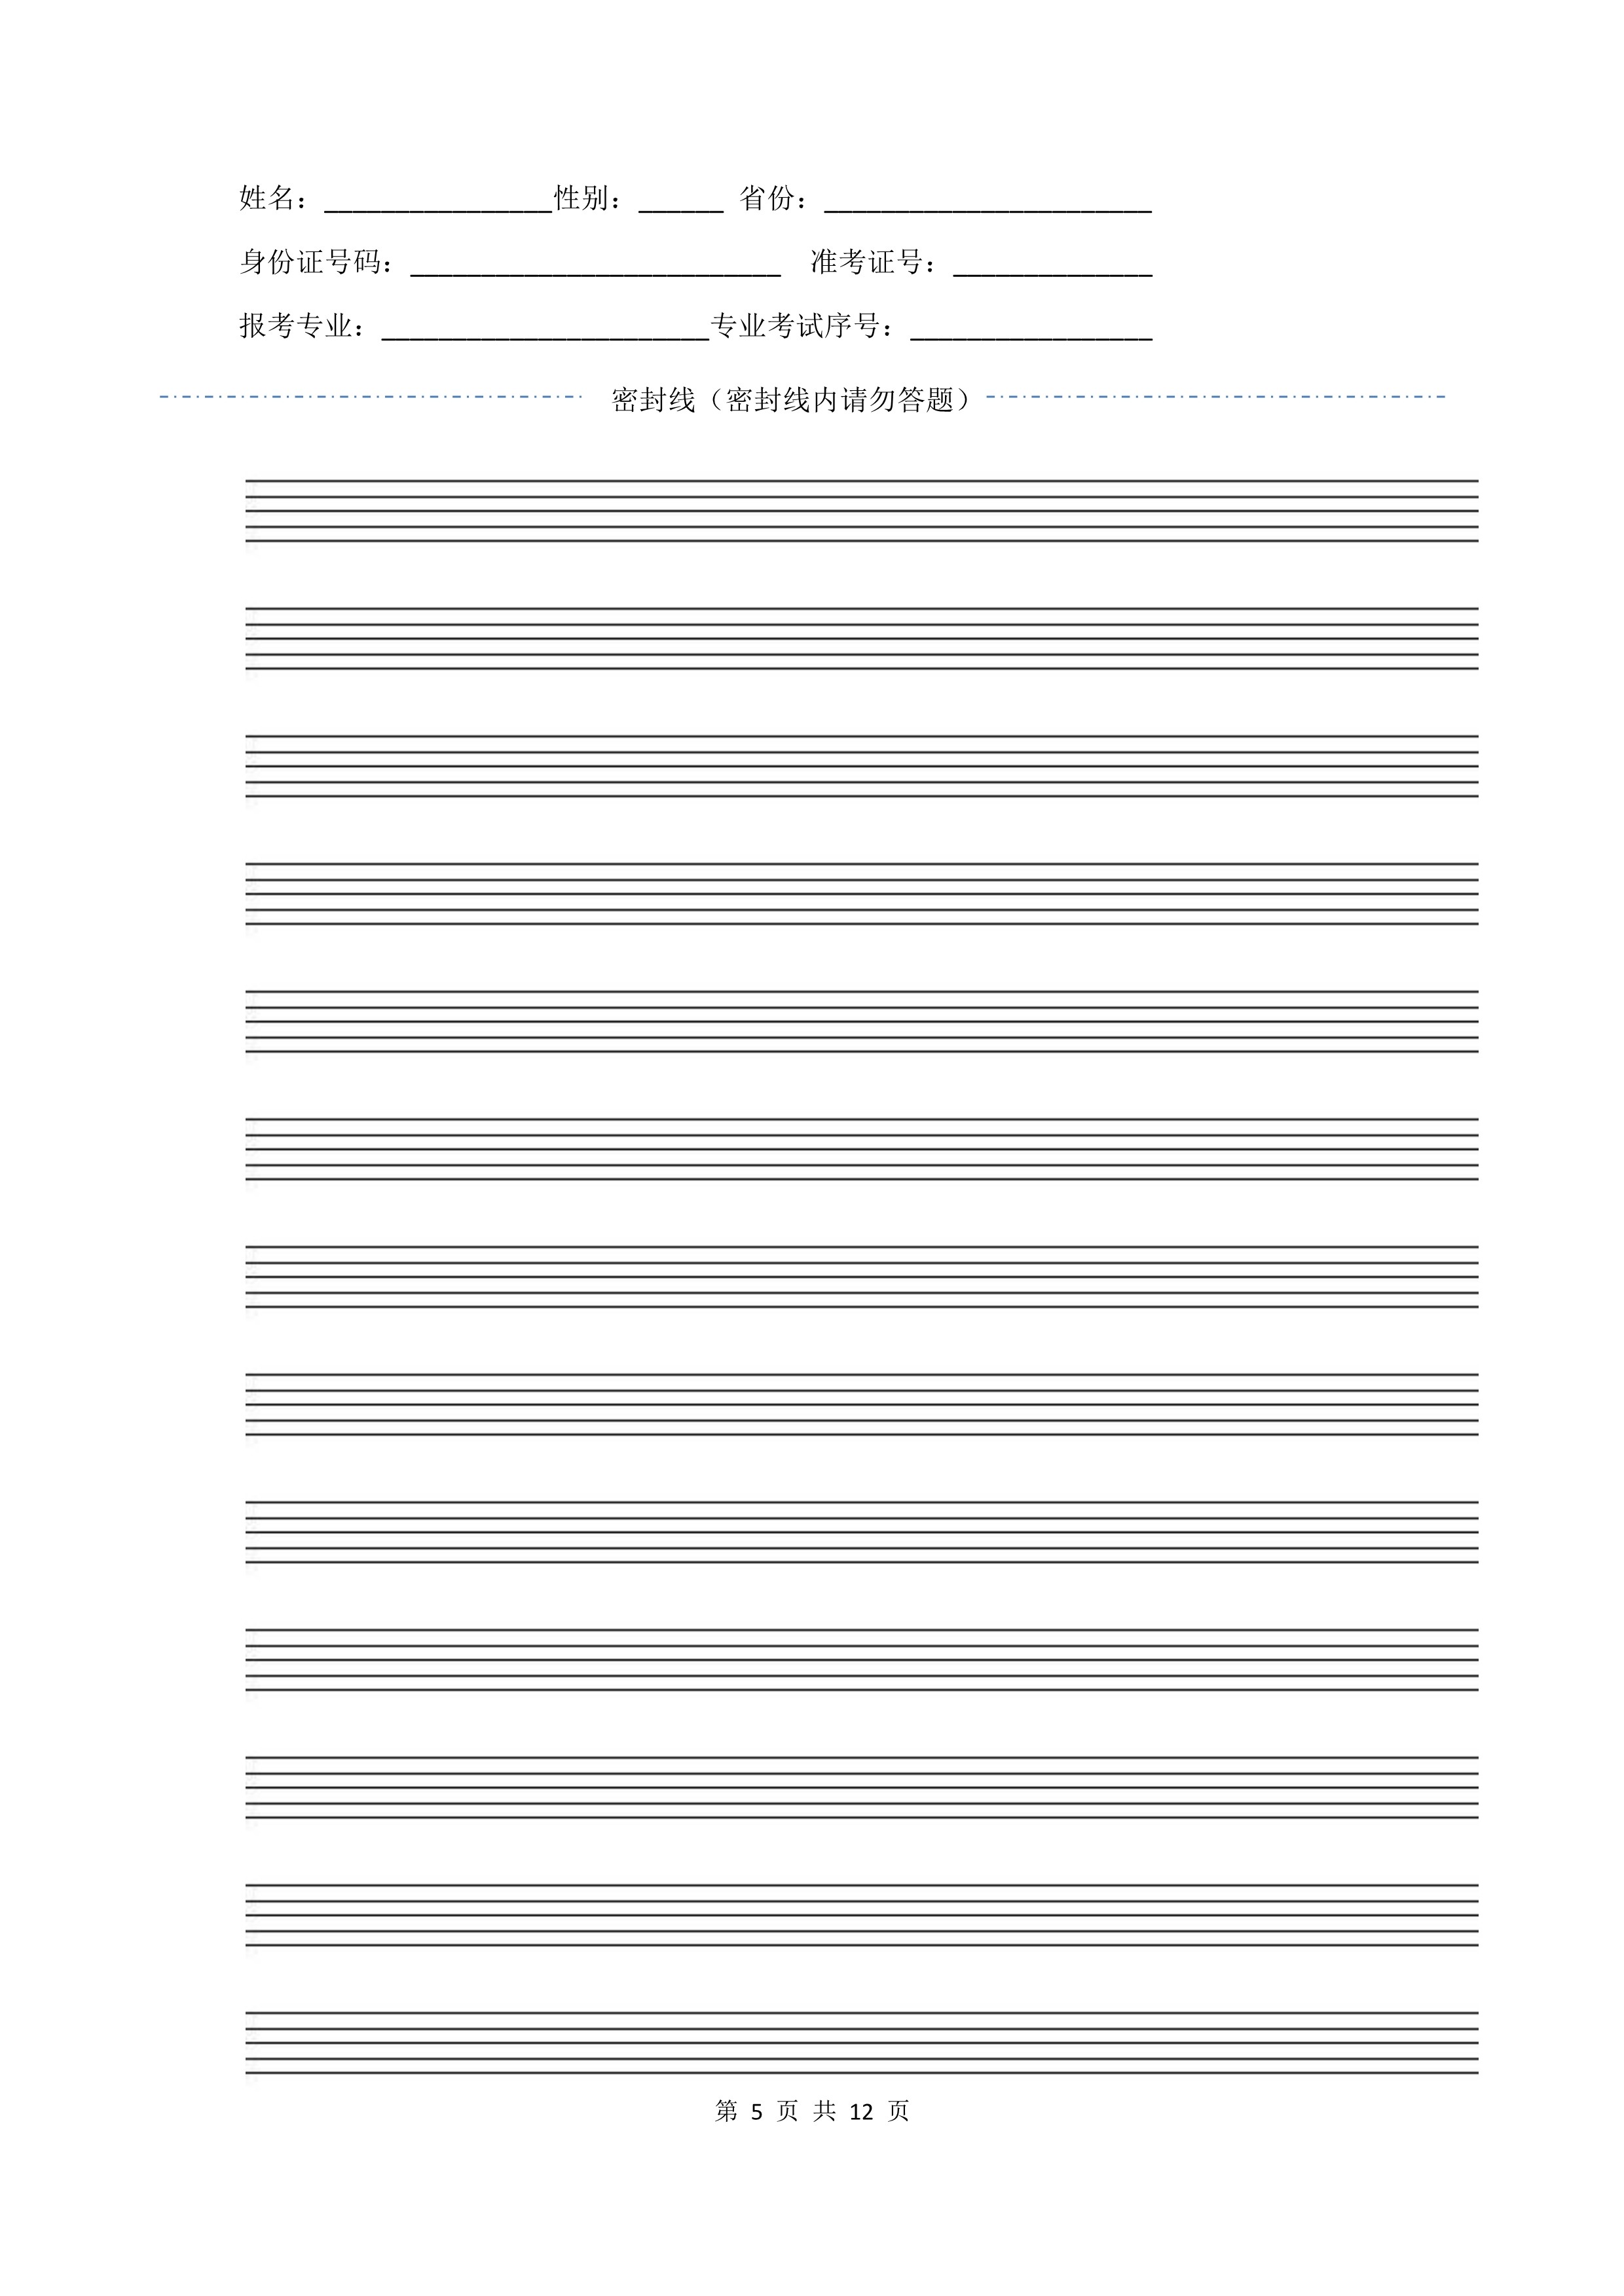 南京艺术学院2022年本科招生作曲与作曲技术理论、作曲与作曲技术理论（计算机作曲）专业《器乐曲写作》科目考试答题纸及草稿纸_5 - 副本.jpg